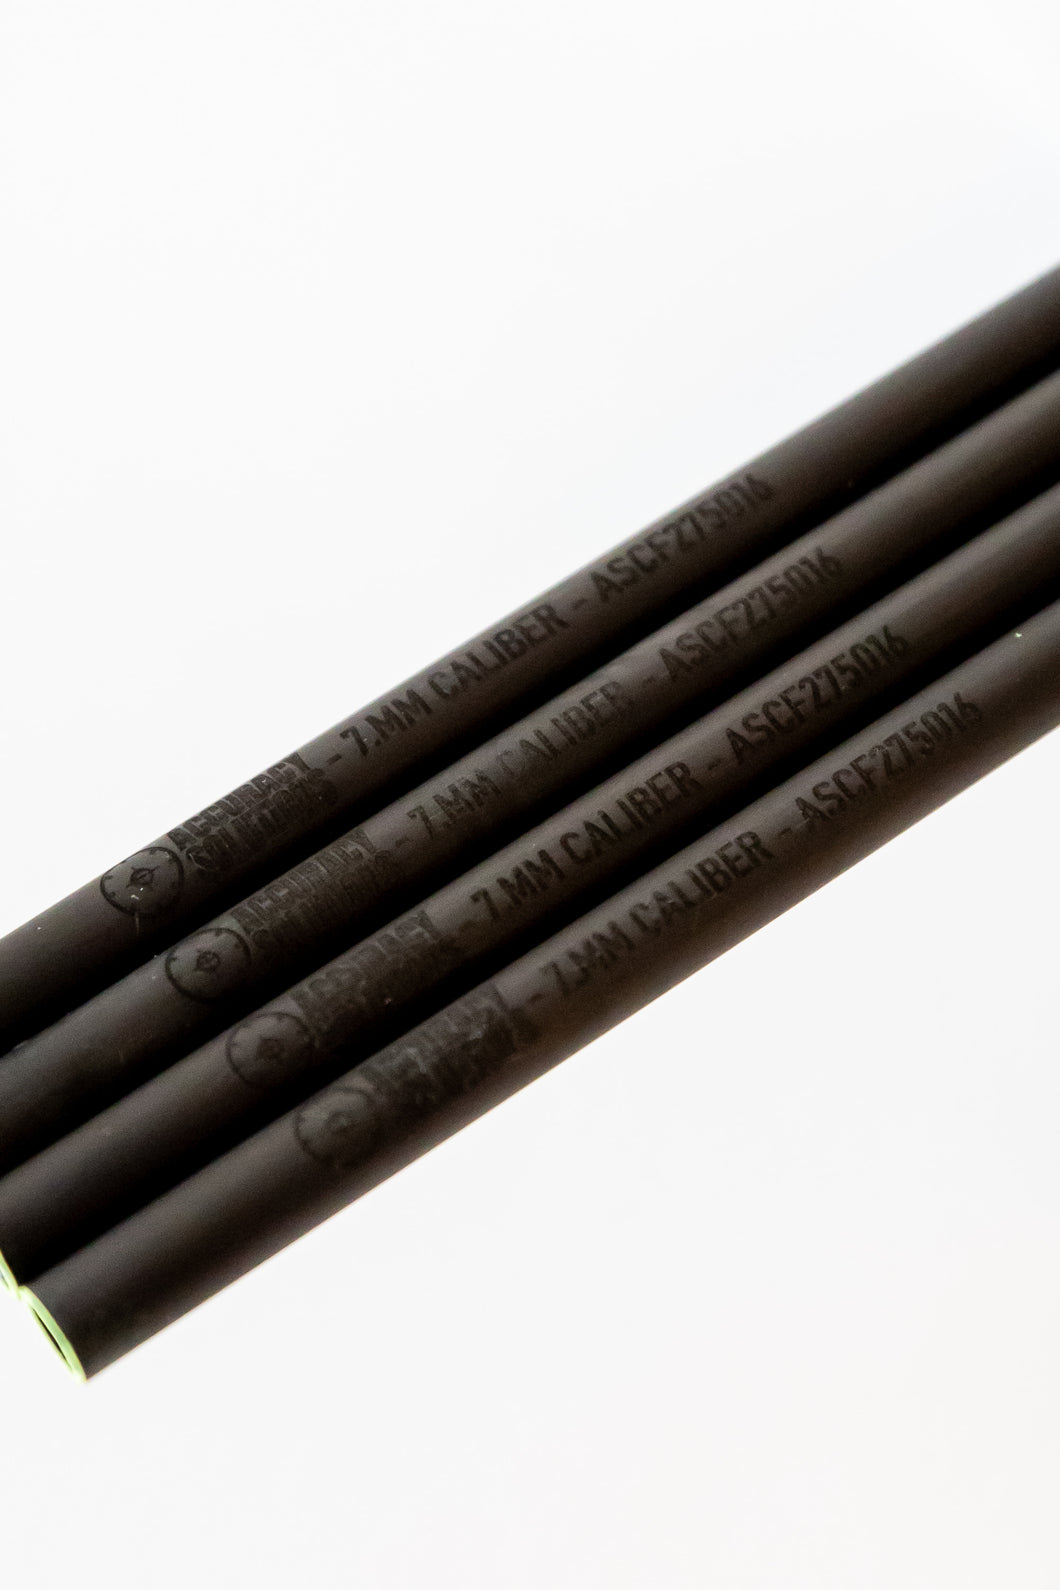 7MM Carbon Fiber Bore Alignment Rod